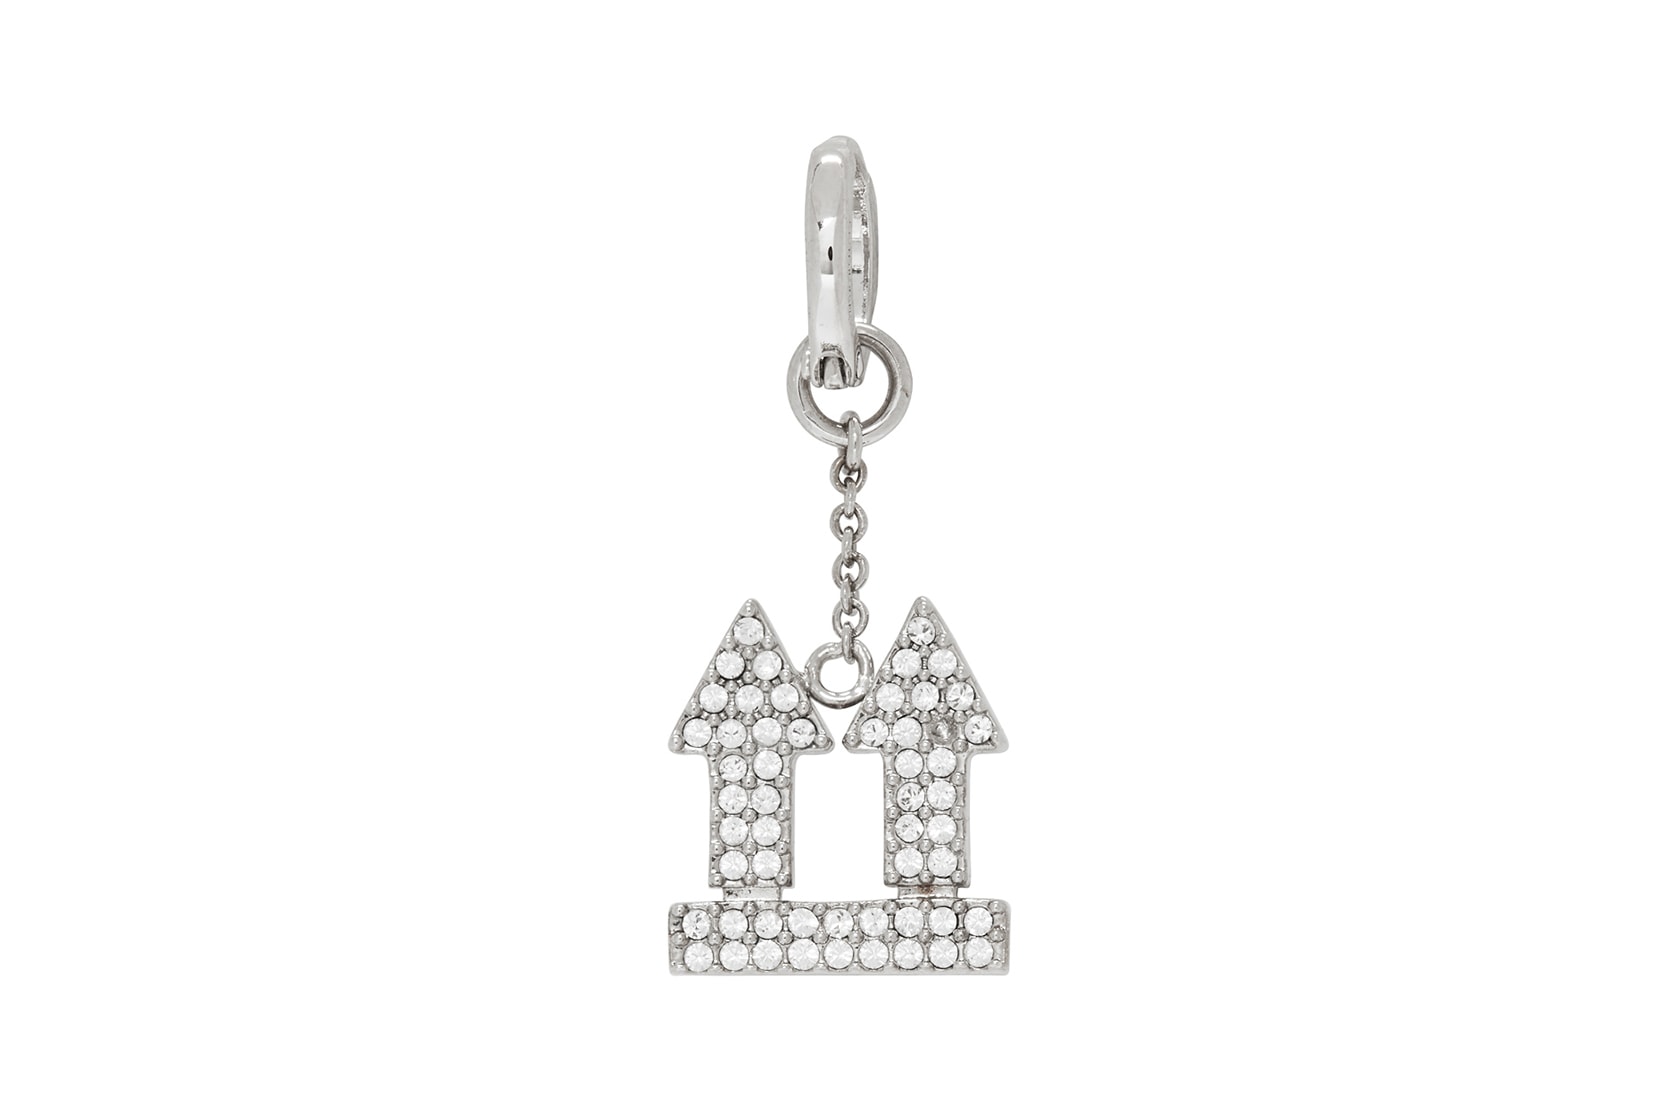 off-white earrings jewelry arrow silver